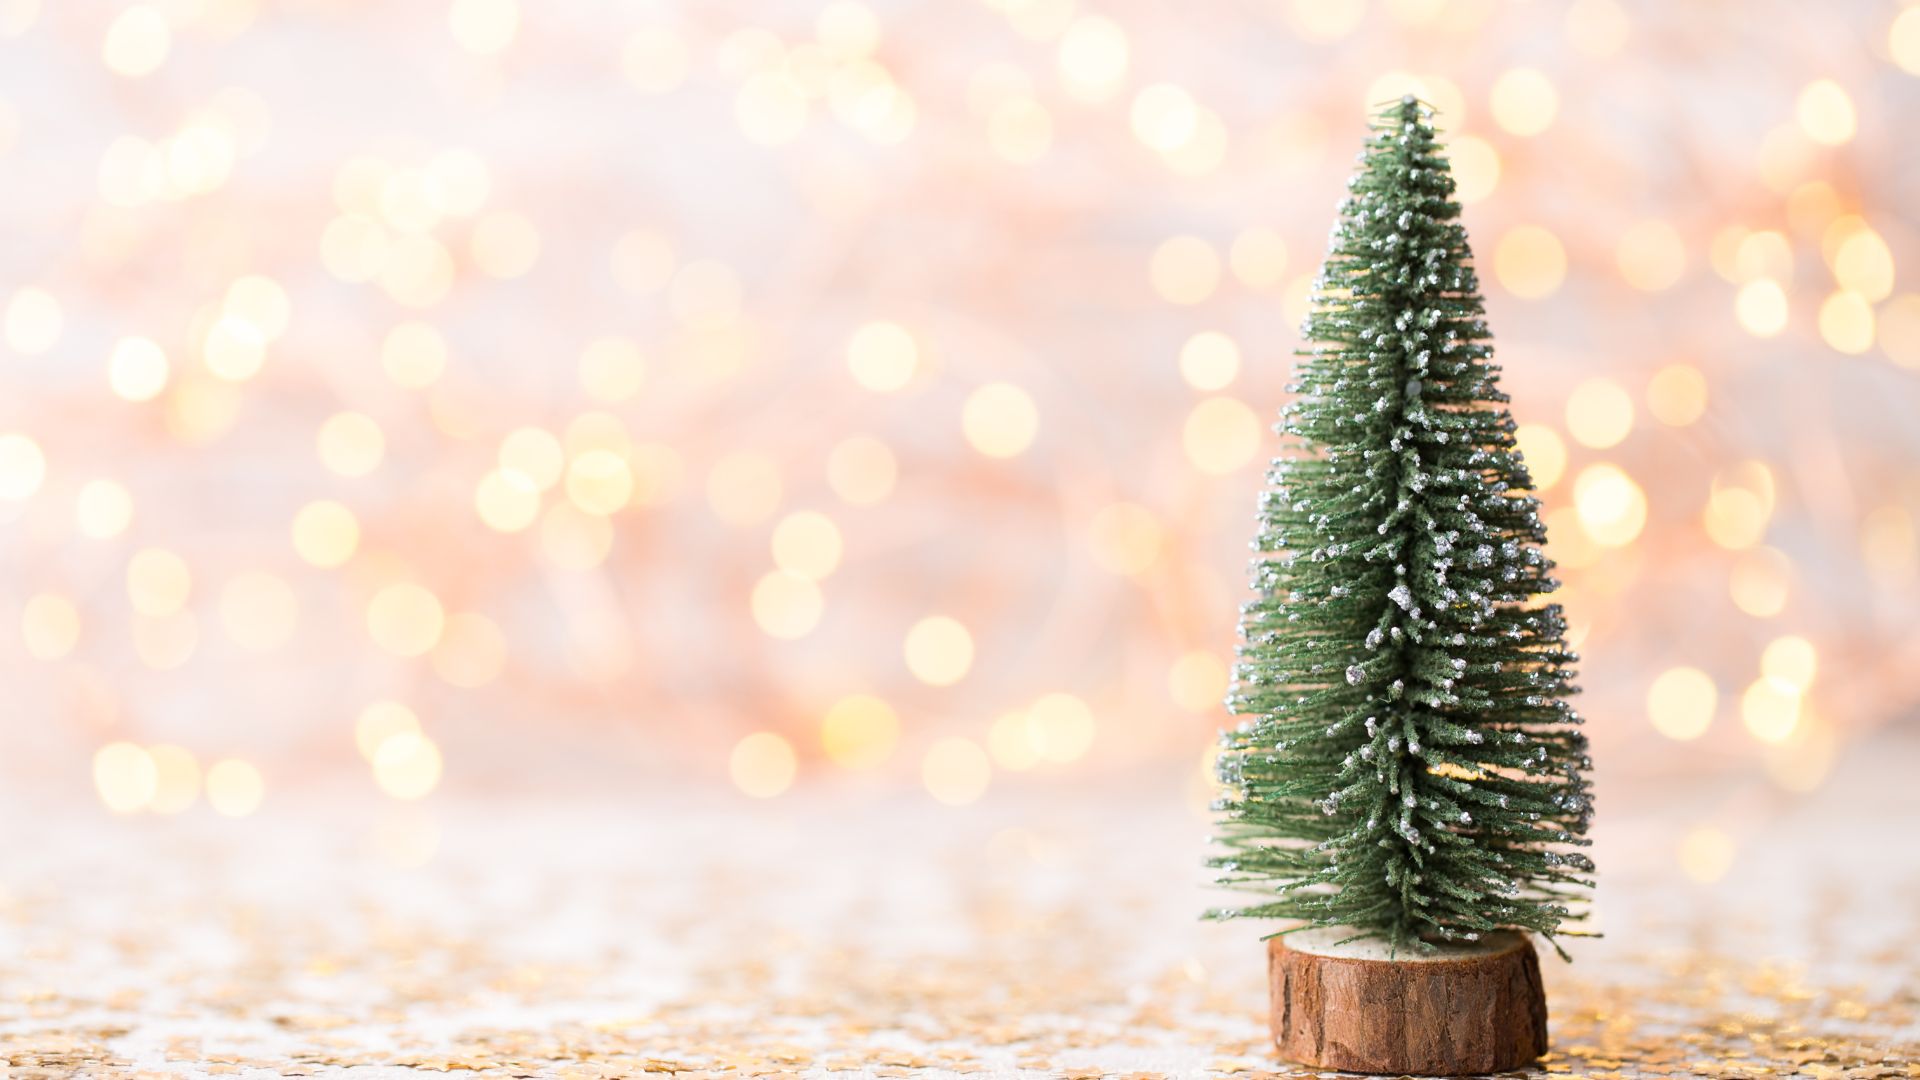 Imagem de fundo dourado e ao lado direito da tela um pinheiro de Natal coberto com flocos de neve.